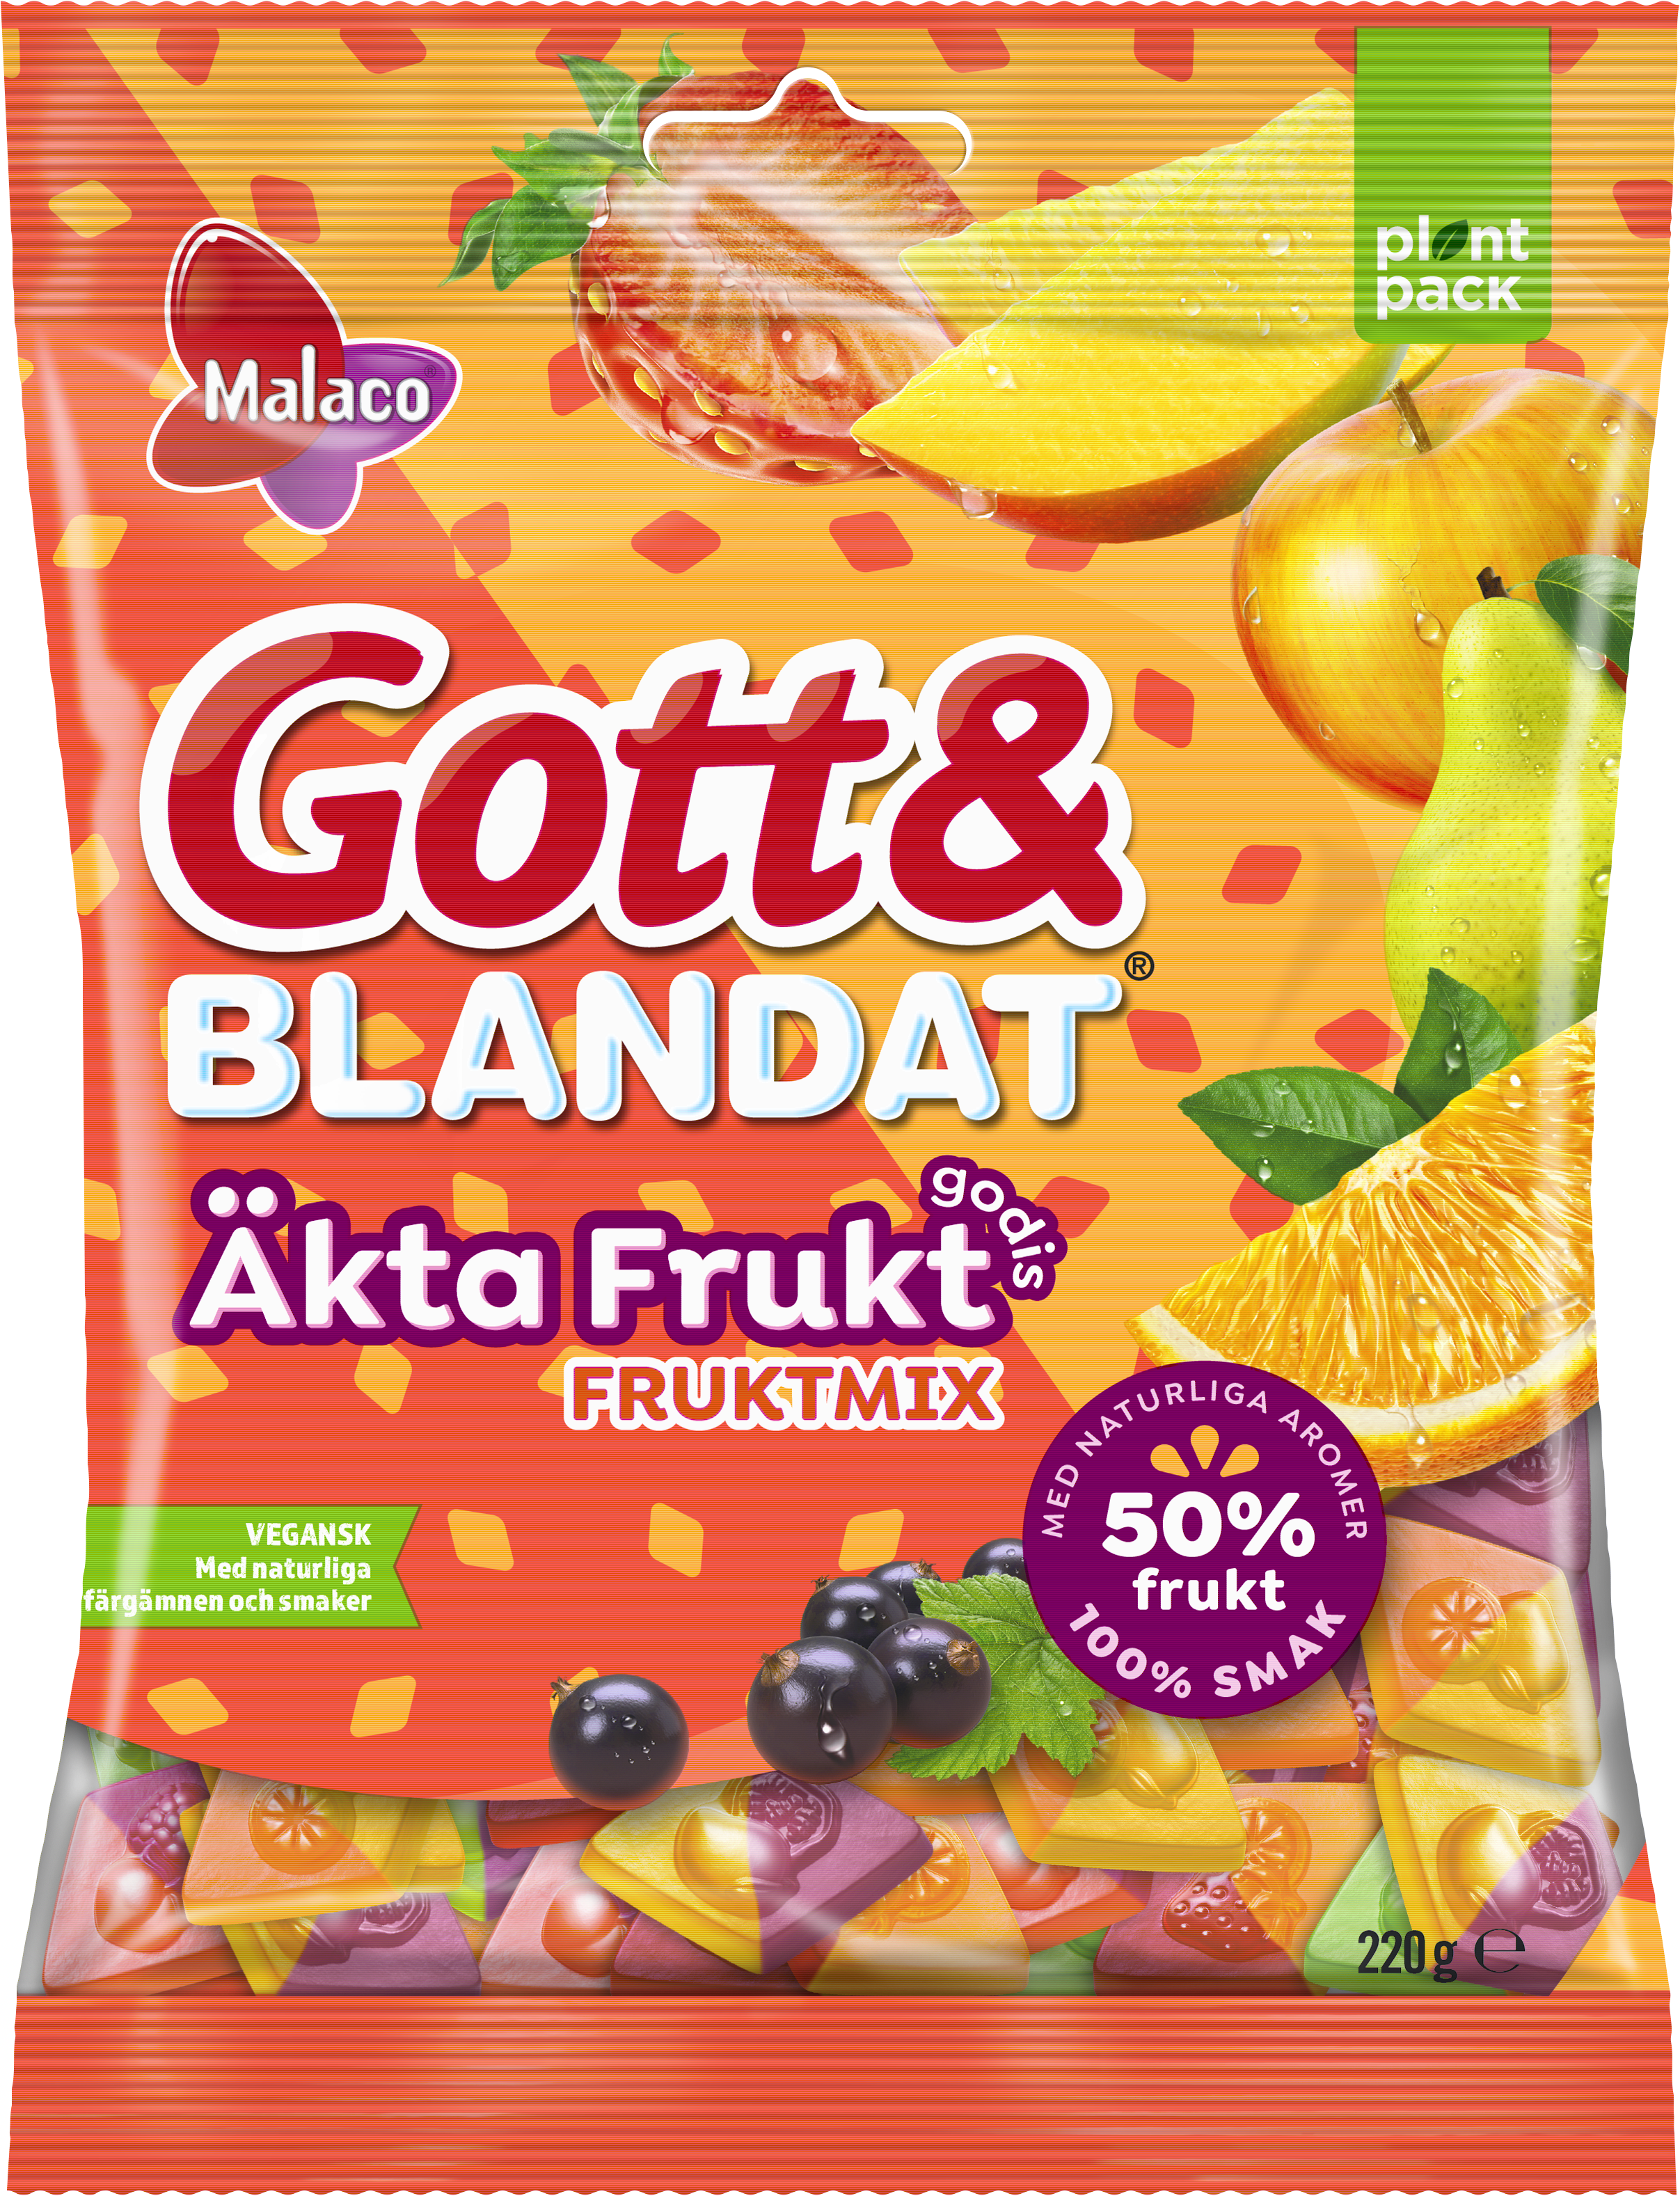 Malaco Gott & Blandat "Real Fruit-Candy" Fruit Mix by Sweet Side of Sweden